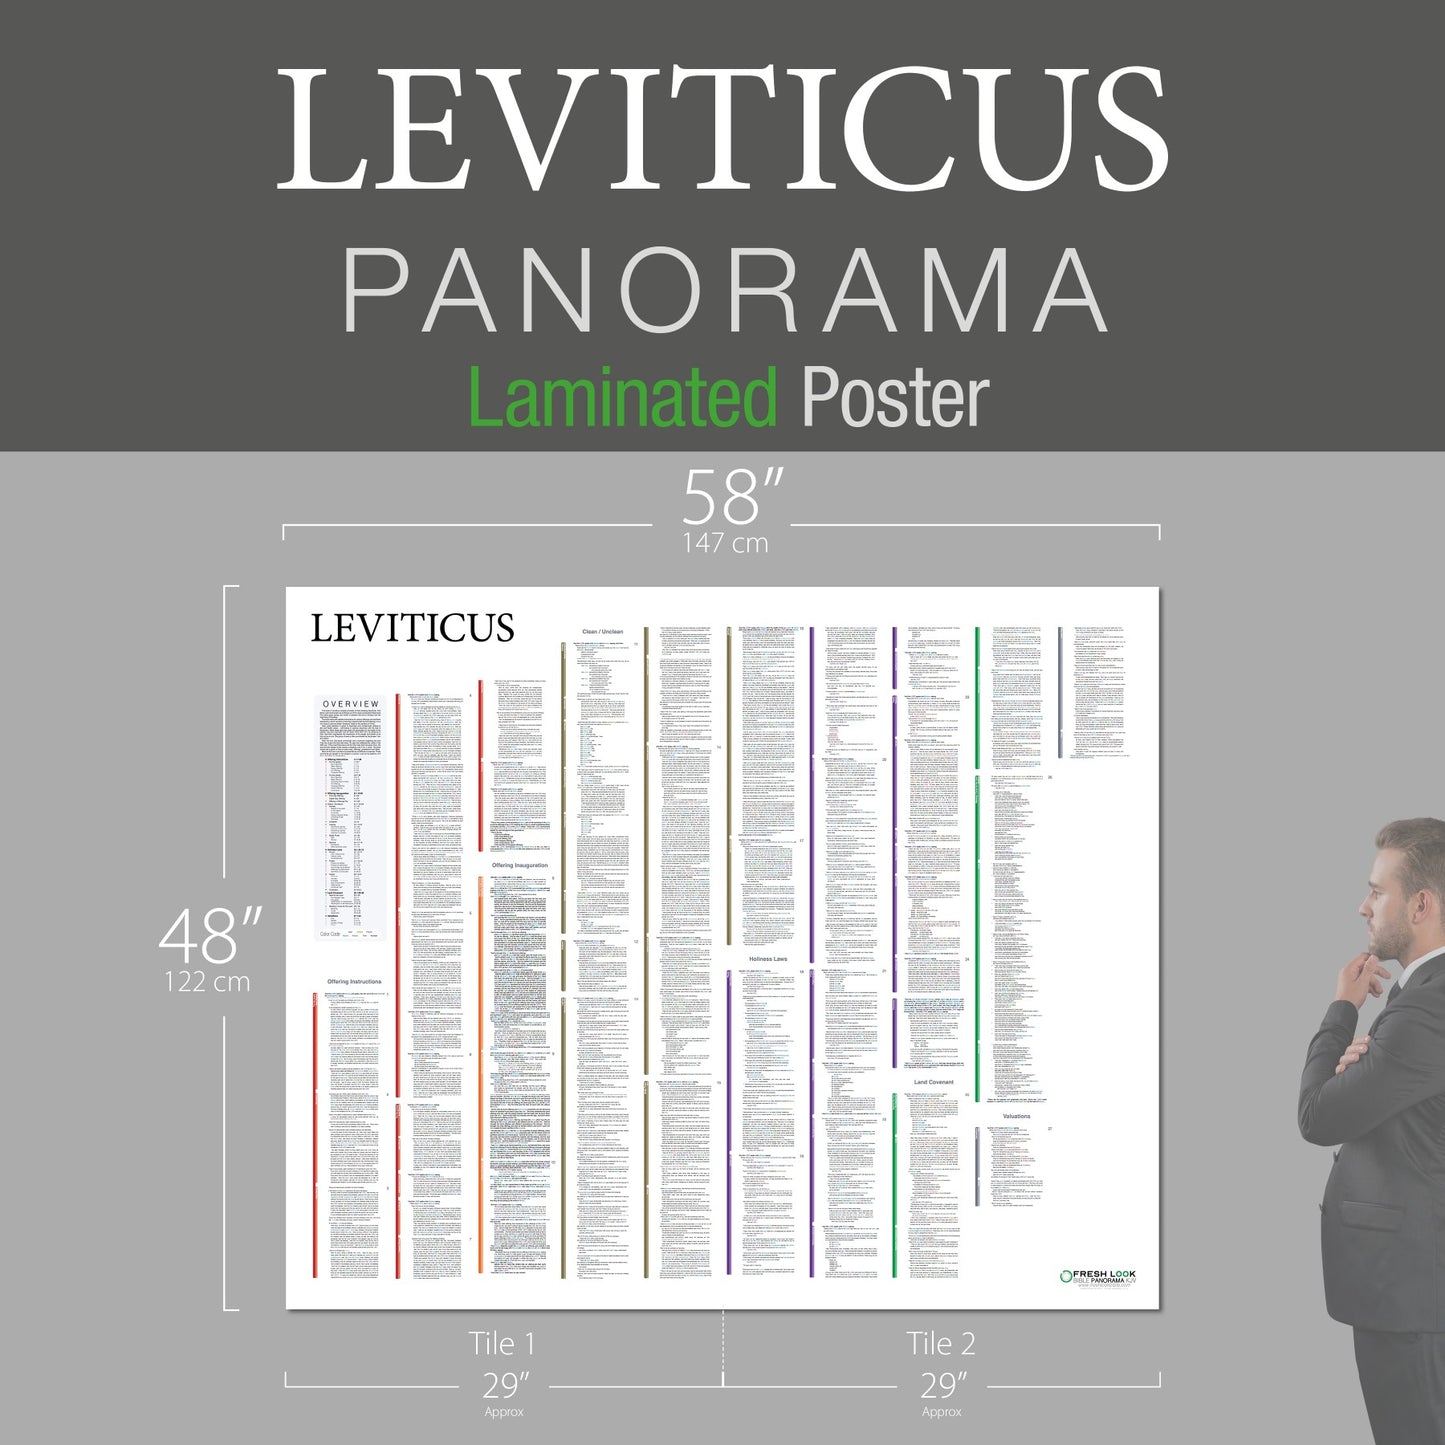 Leviticus Panorama Laminated